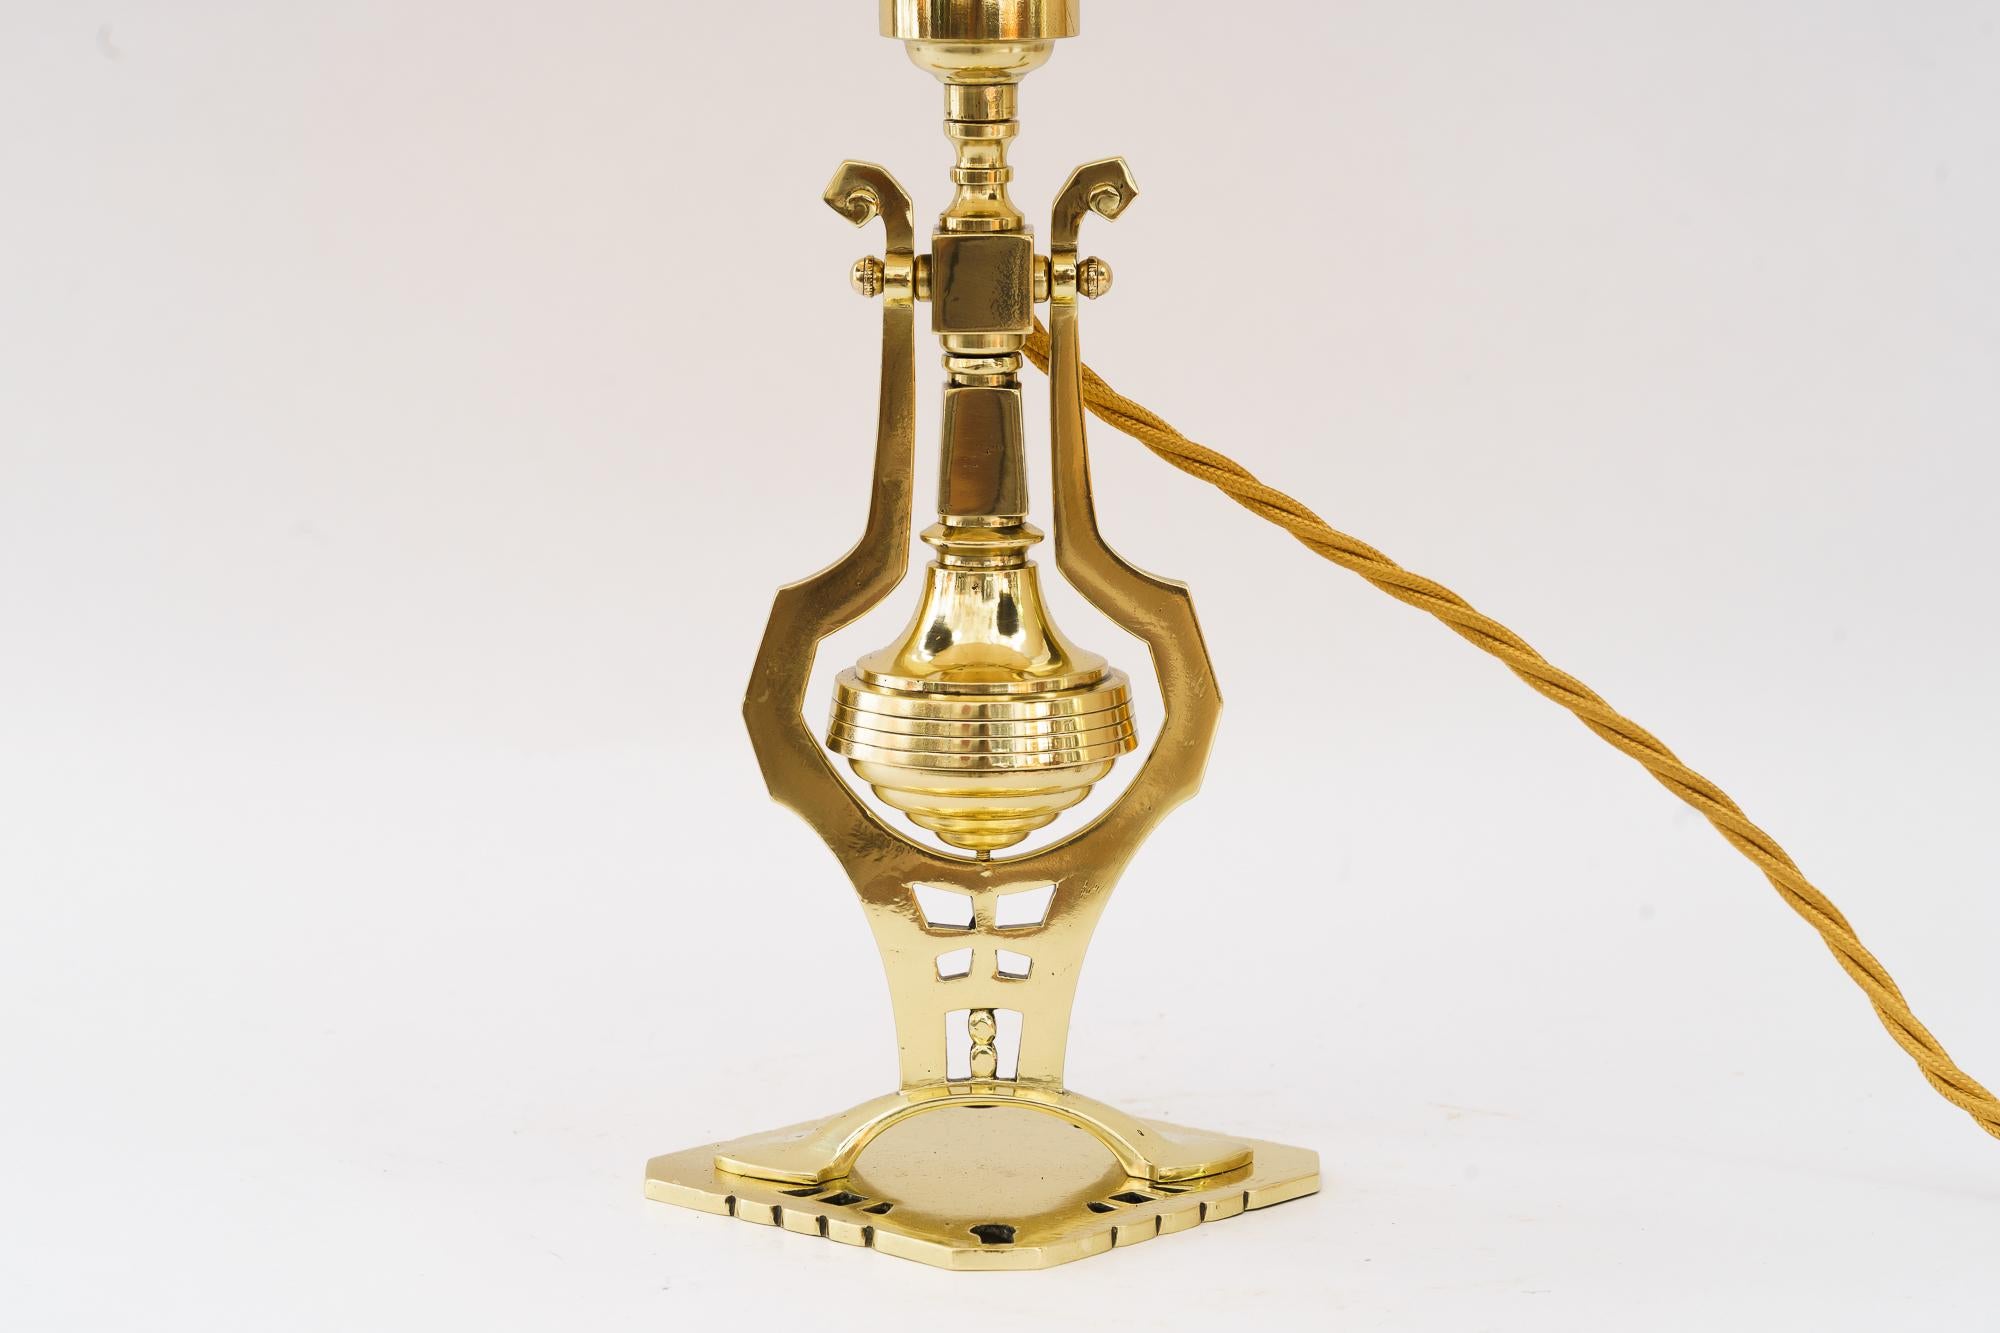 Lampe de table Art Déco vienne vers 1920
Laiton poli et émaillé au four
L'abat-jour en tissu est remplacé ( nouveau )